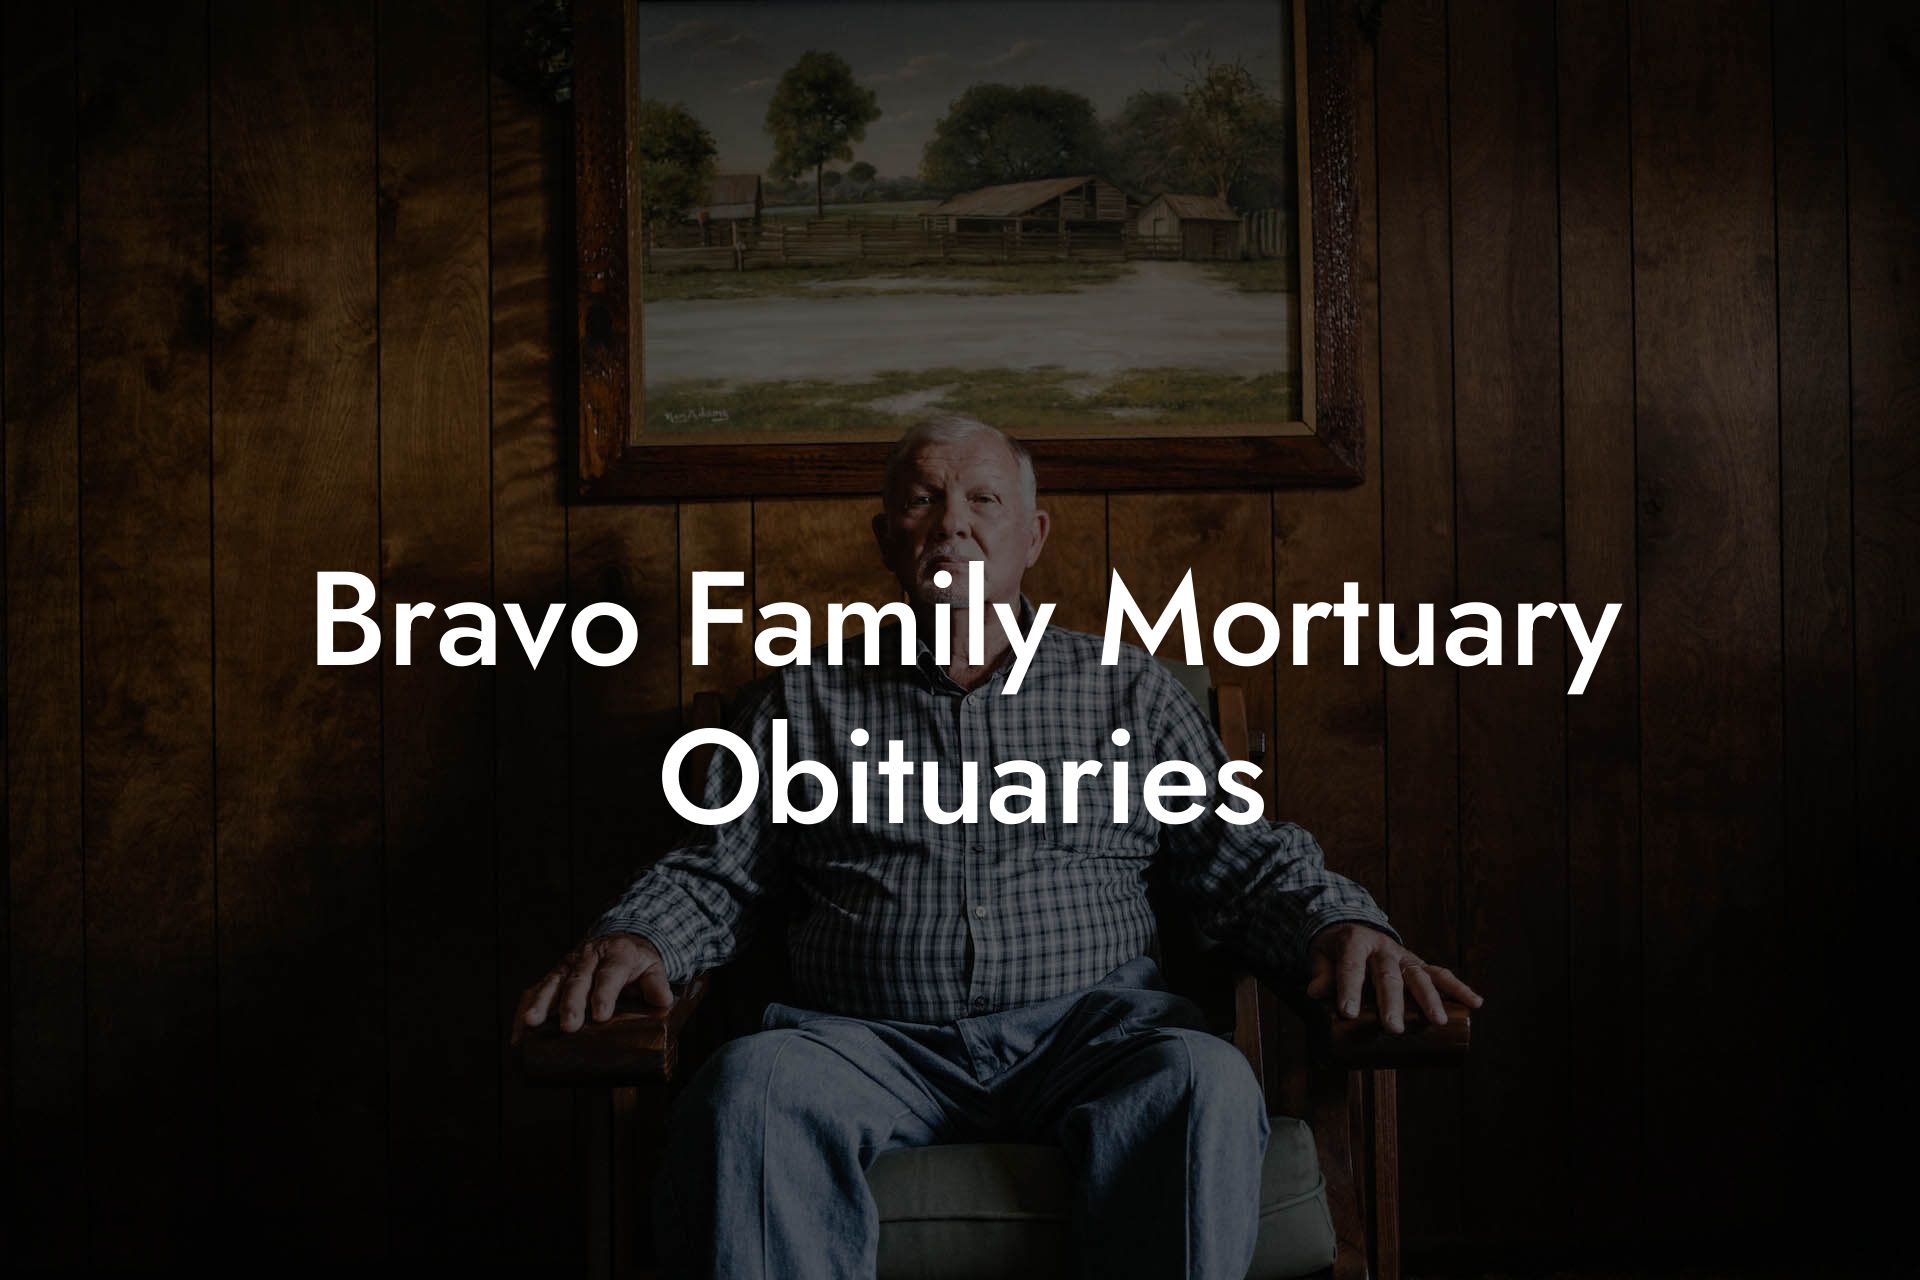 Bravo Family Mortuary Obituaries